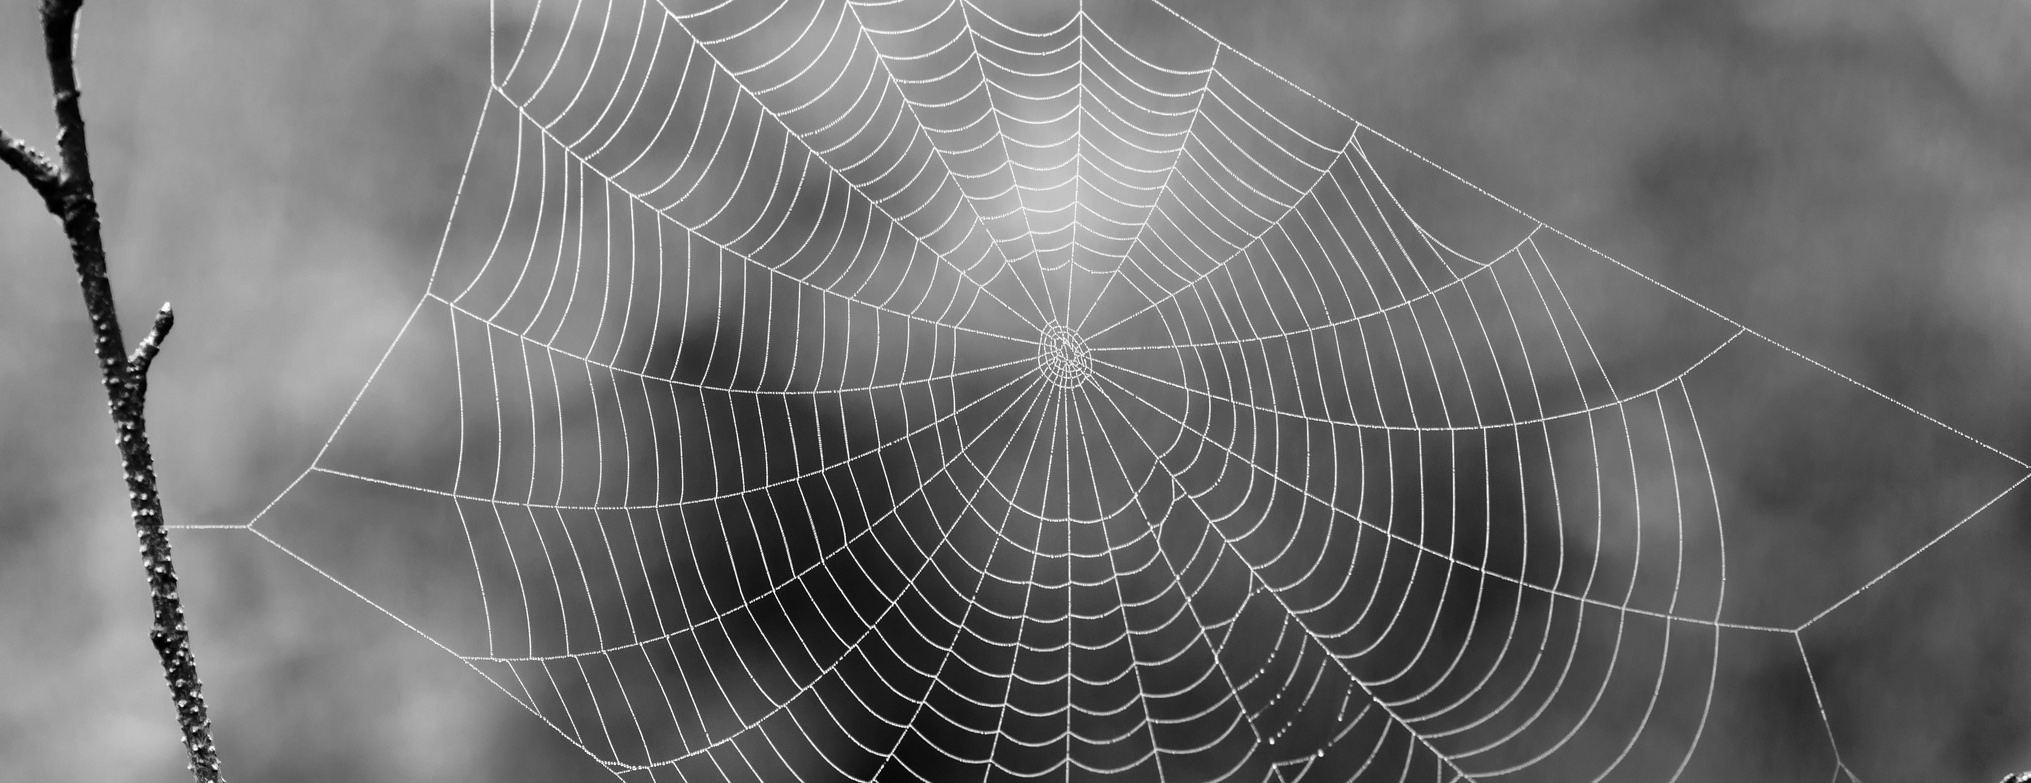 Чёрно-белая фотография паутины.